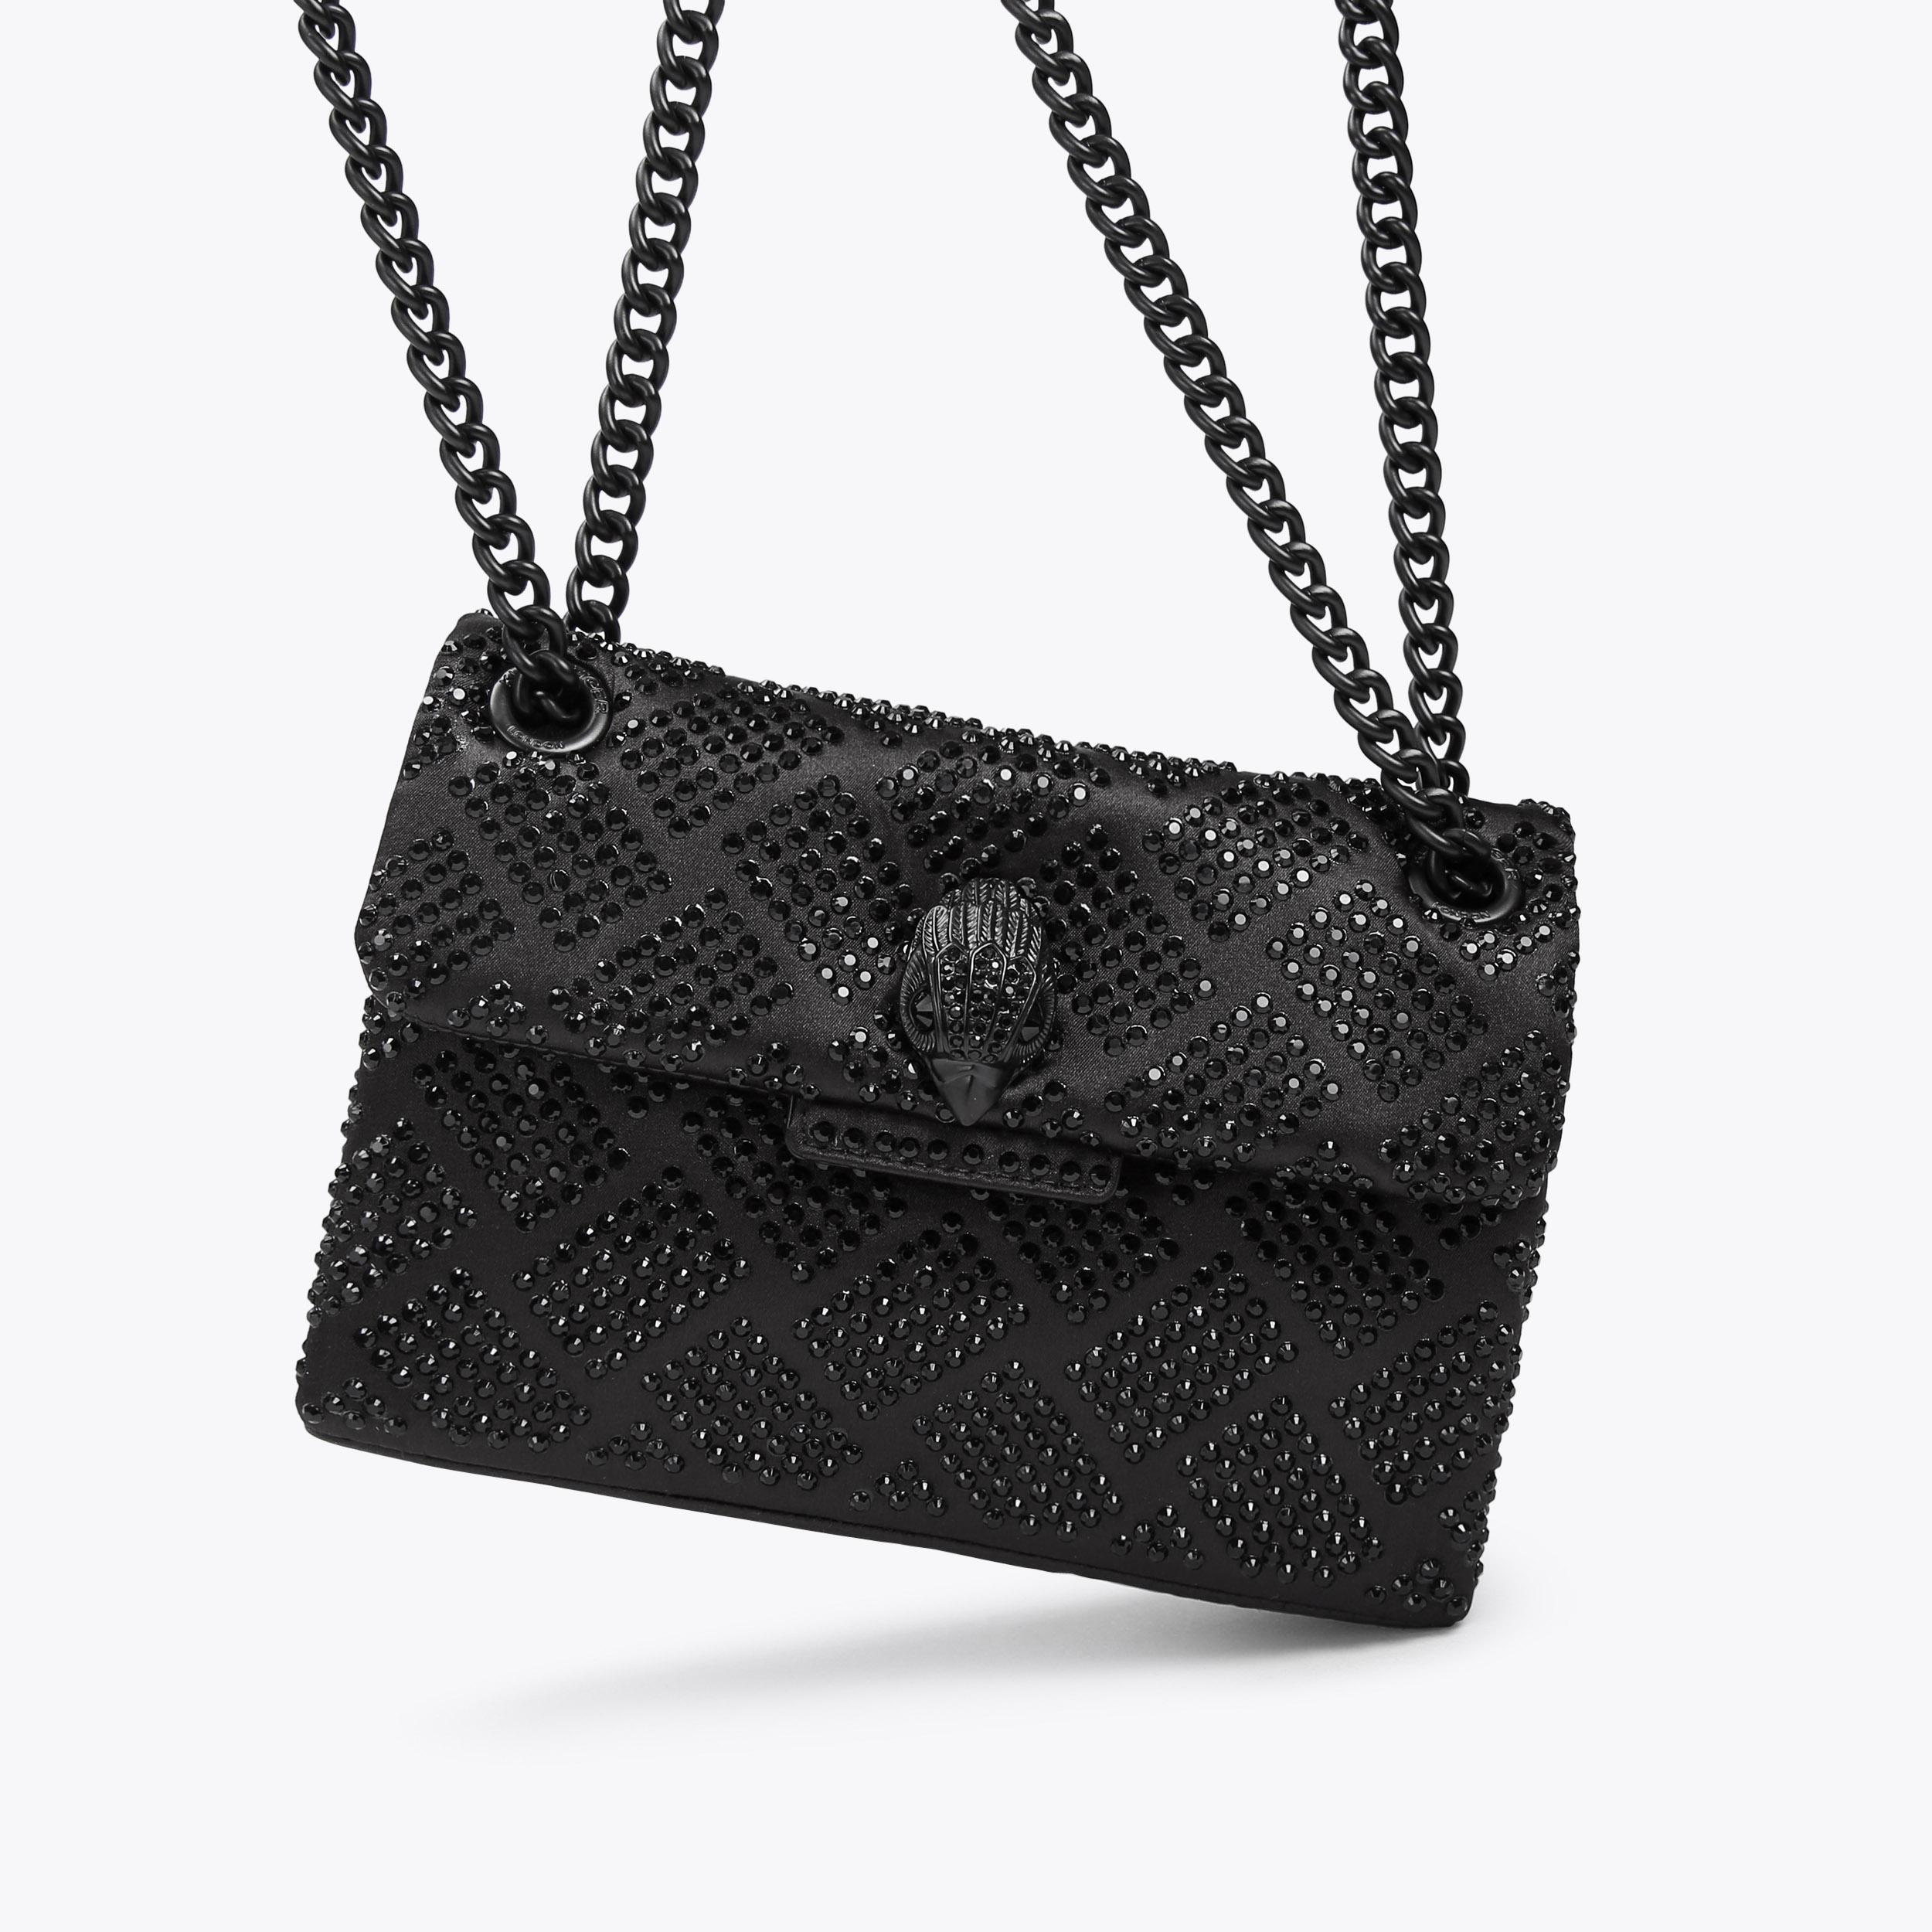 FABRIC MINI KENSINGTON Black Crystal Cross Body Fabric Bag by KURT ...